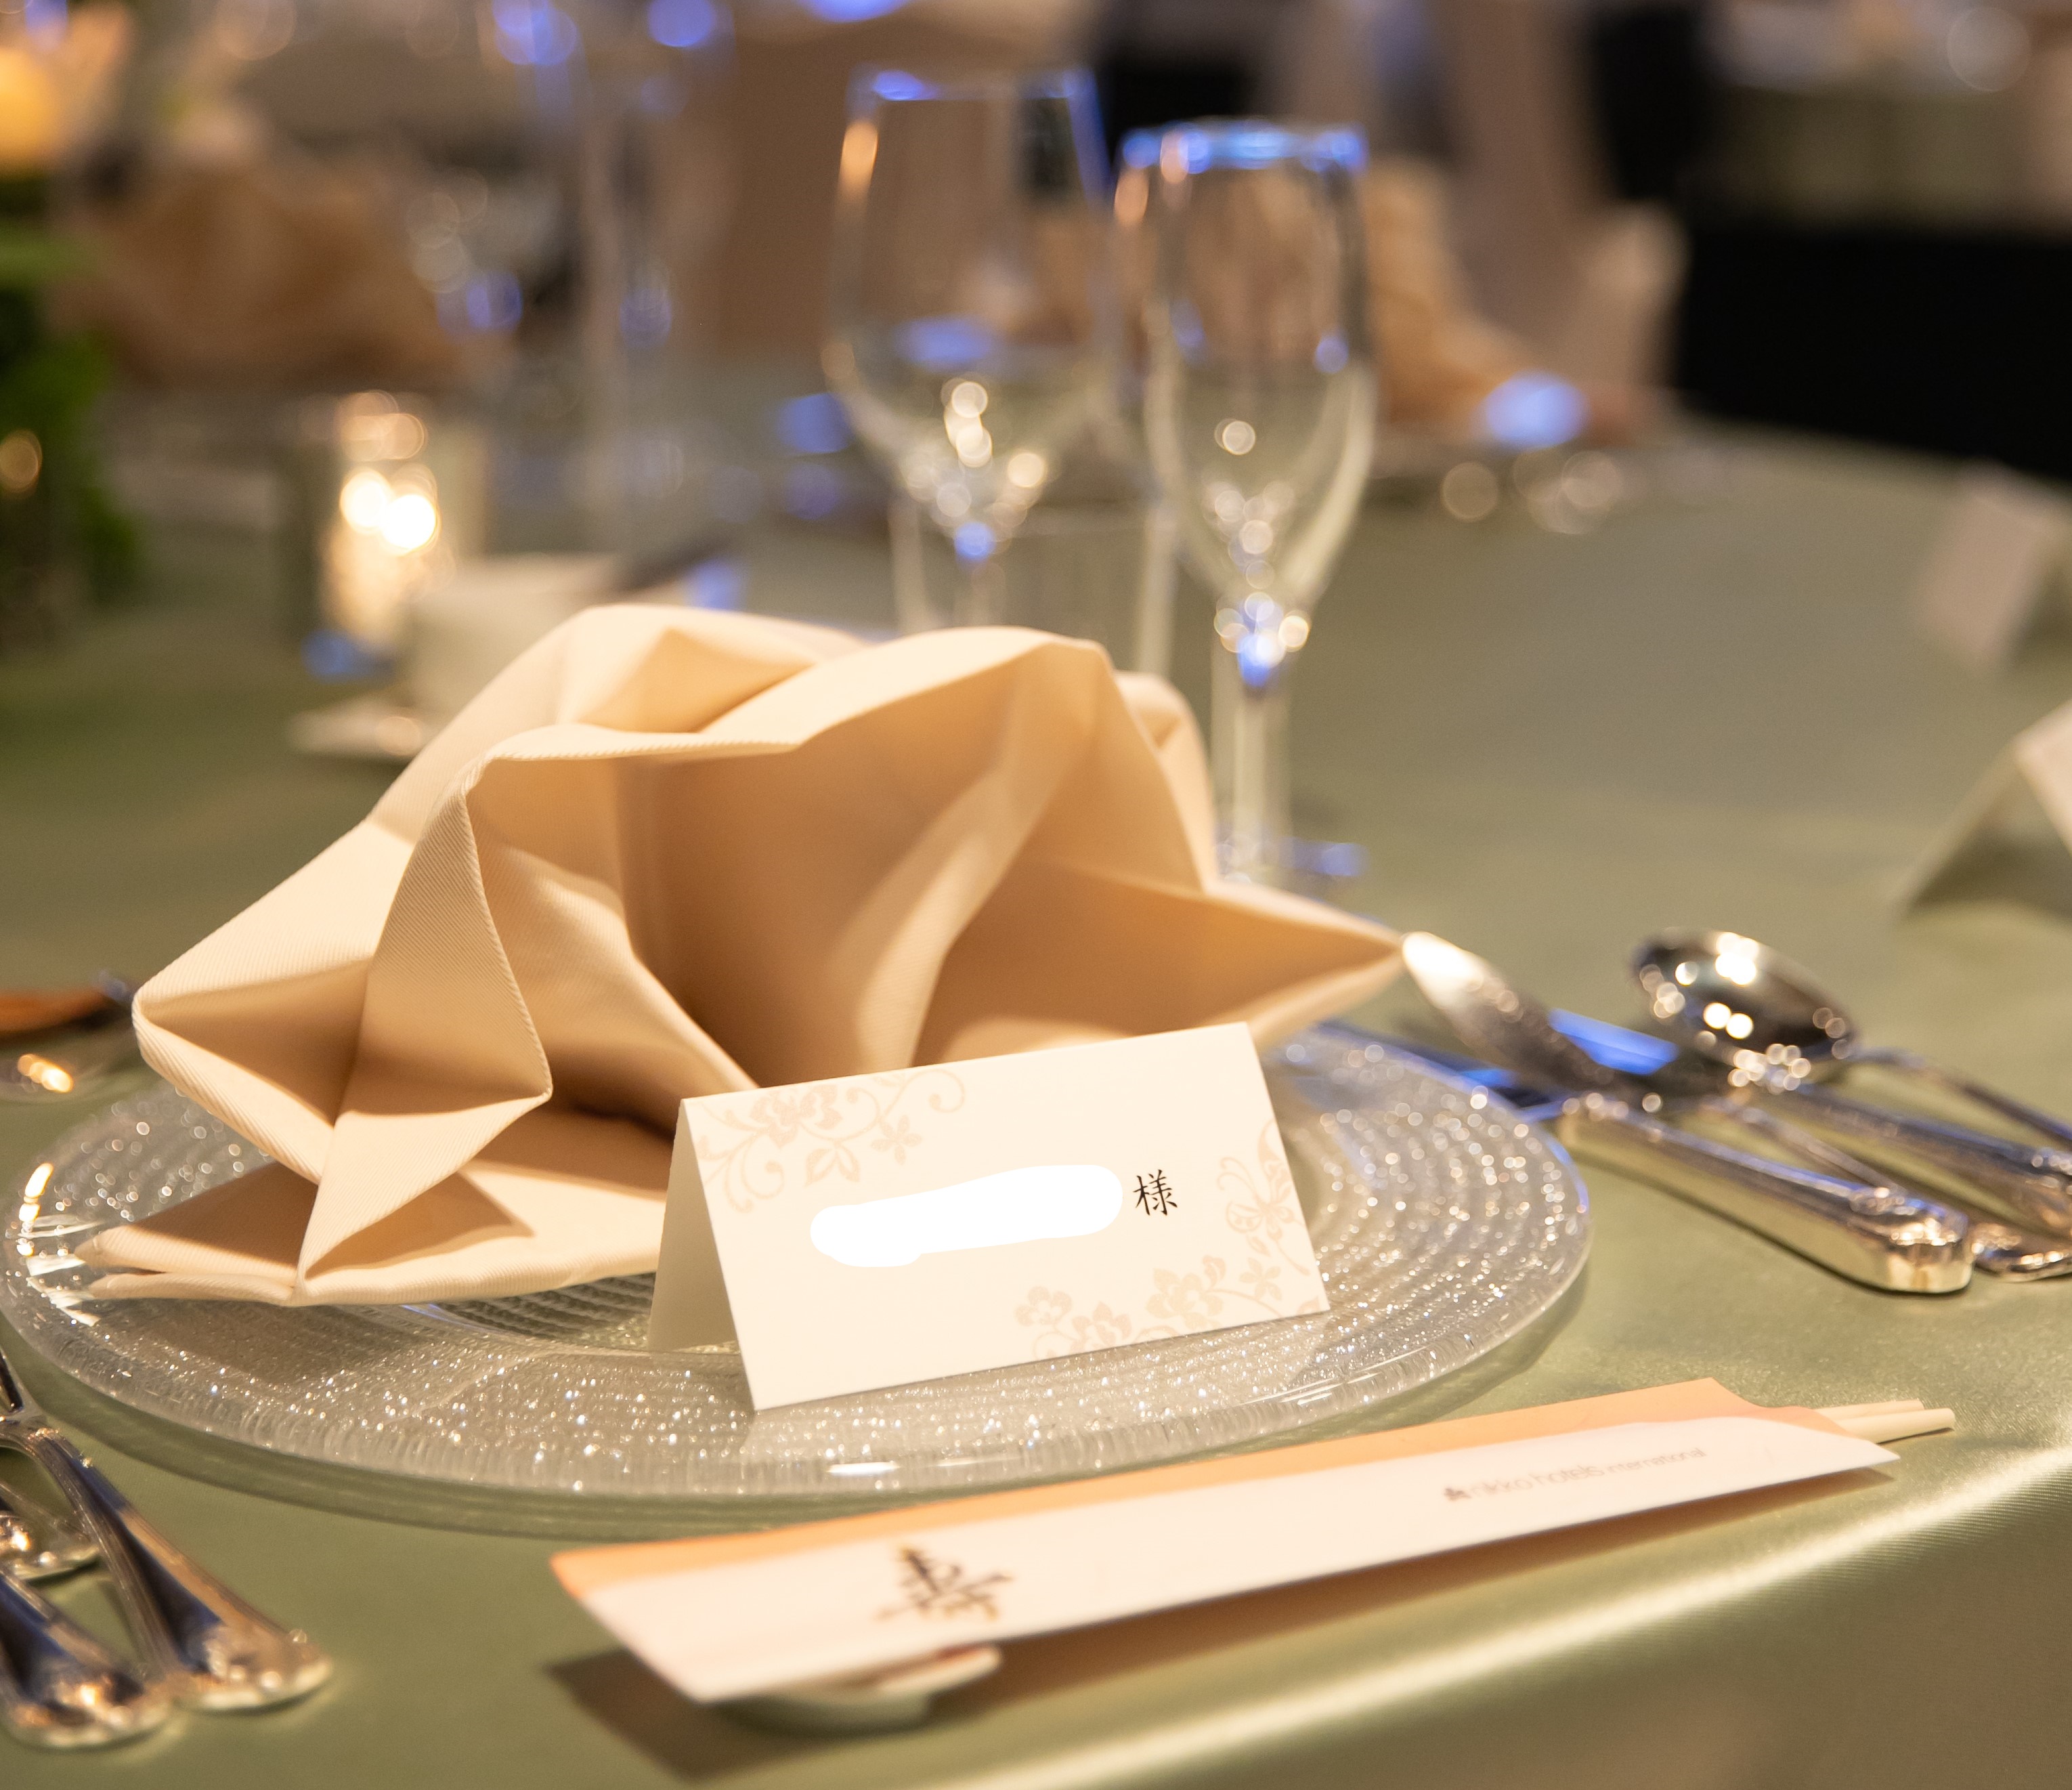 テーブルコーディネートが素敵になる ナフキン の折り方 プランナーブログ 大阪のホテルウエディング 結婚式 ホテル日航大阪 Hotel Nikko Osaka 公式サイト